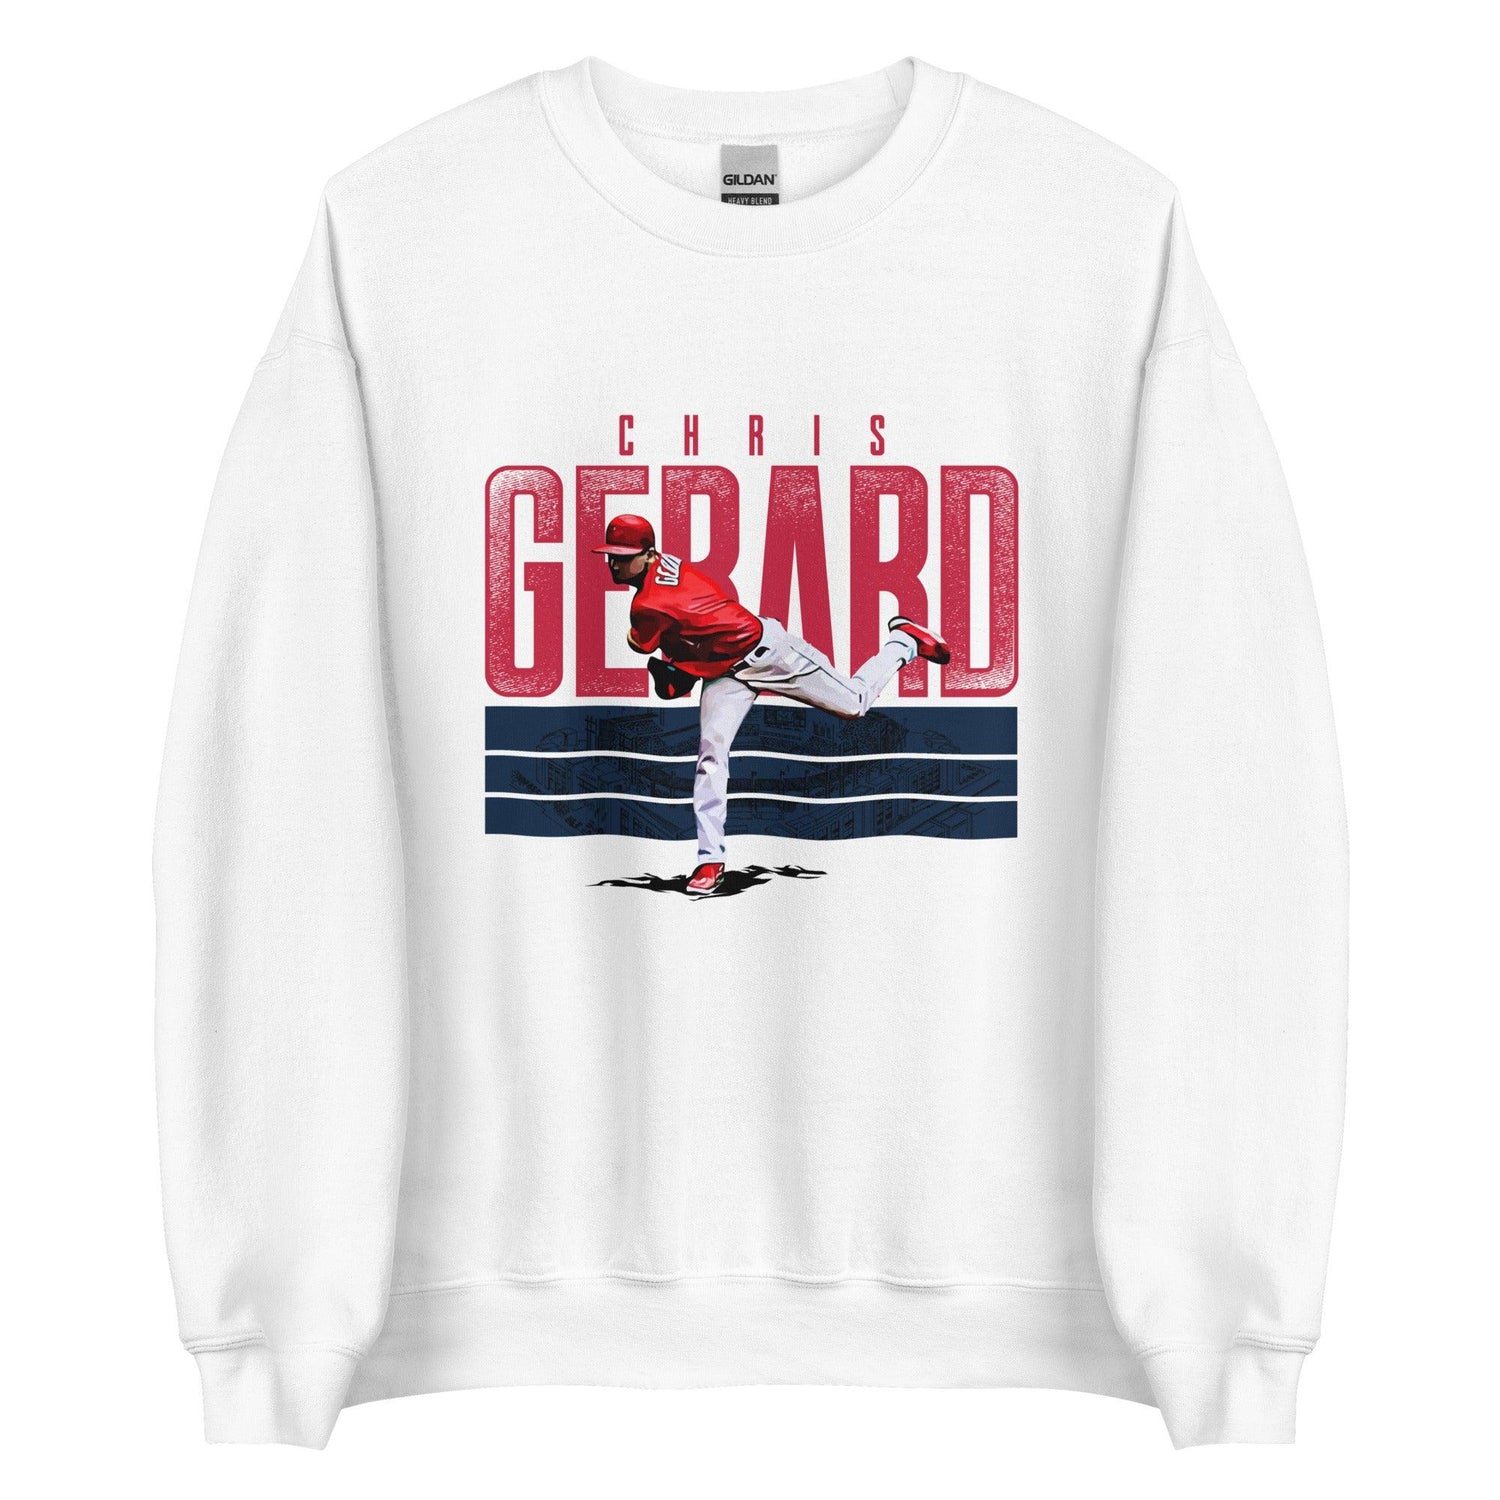 Chris Gerard “Essential” Sweatshirt - Fan Arch